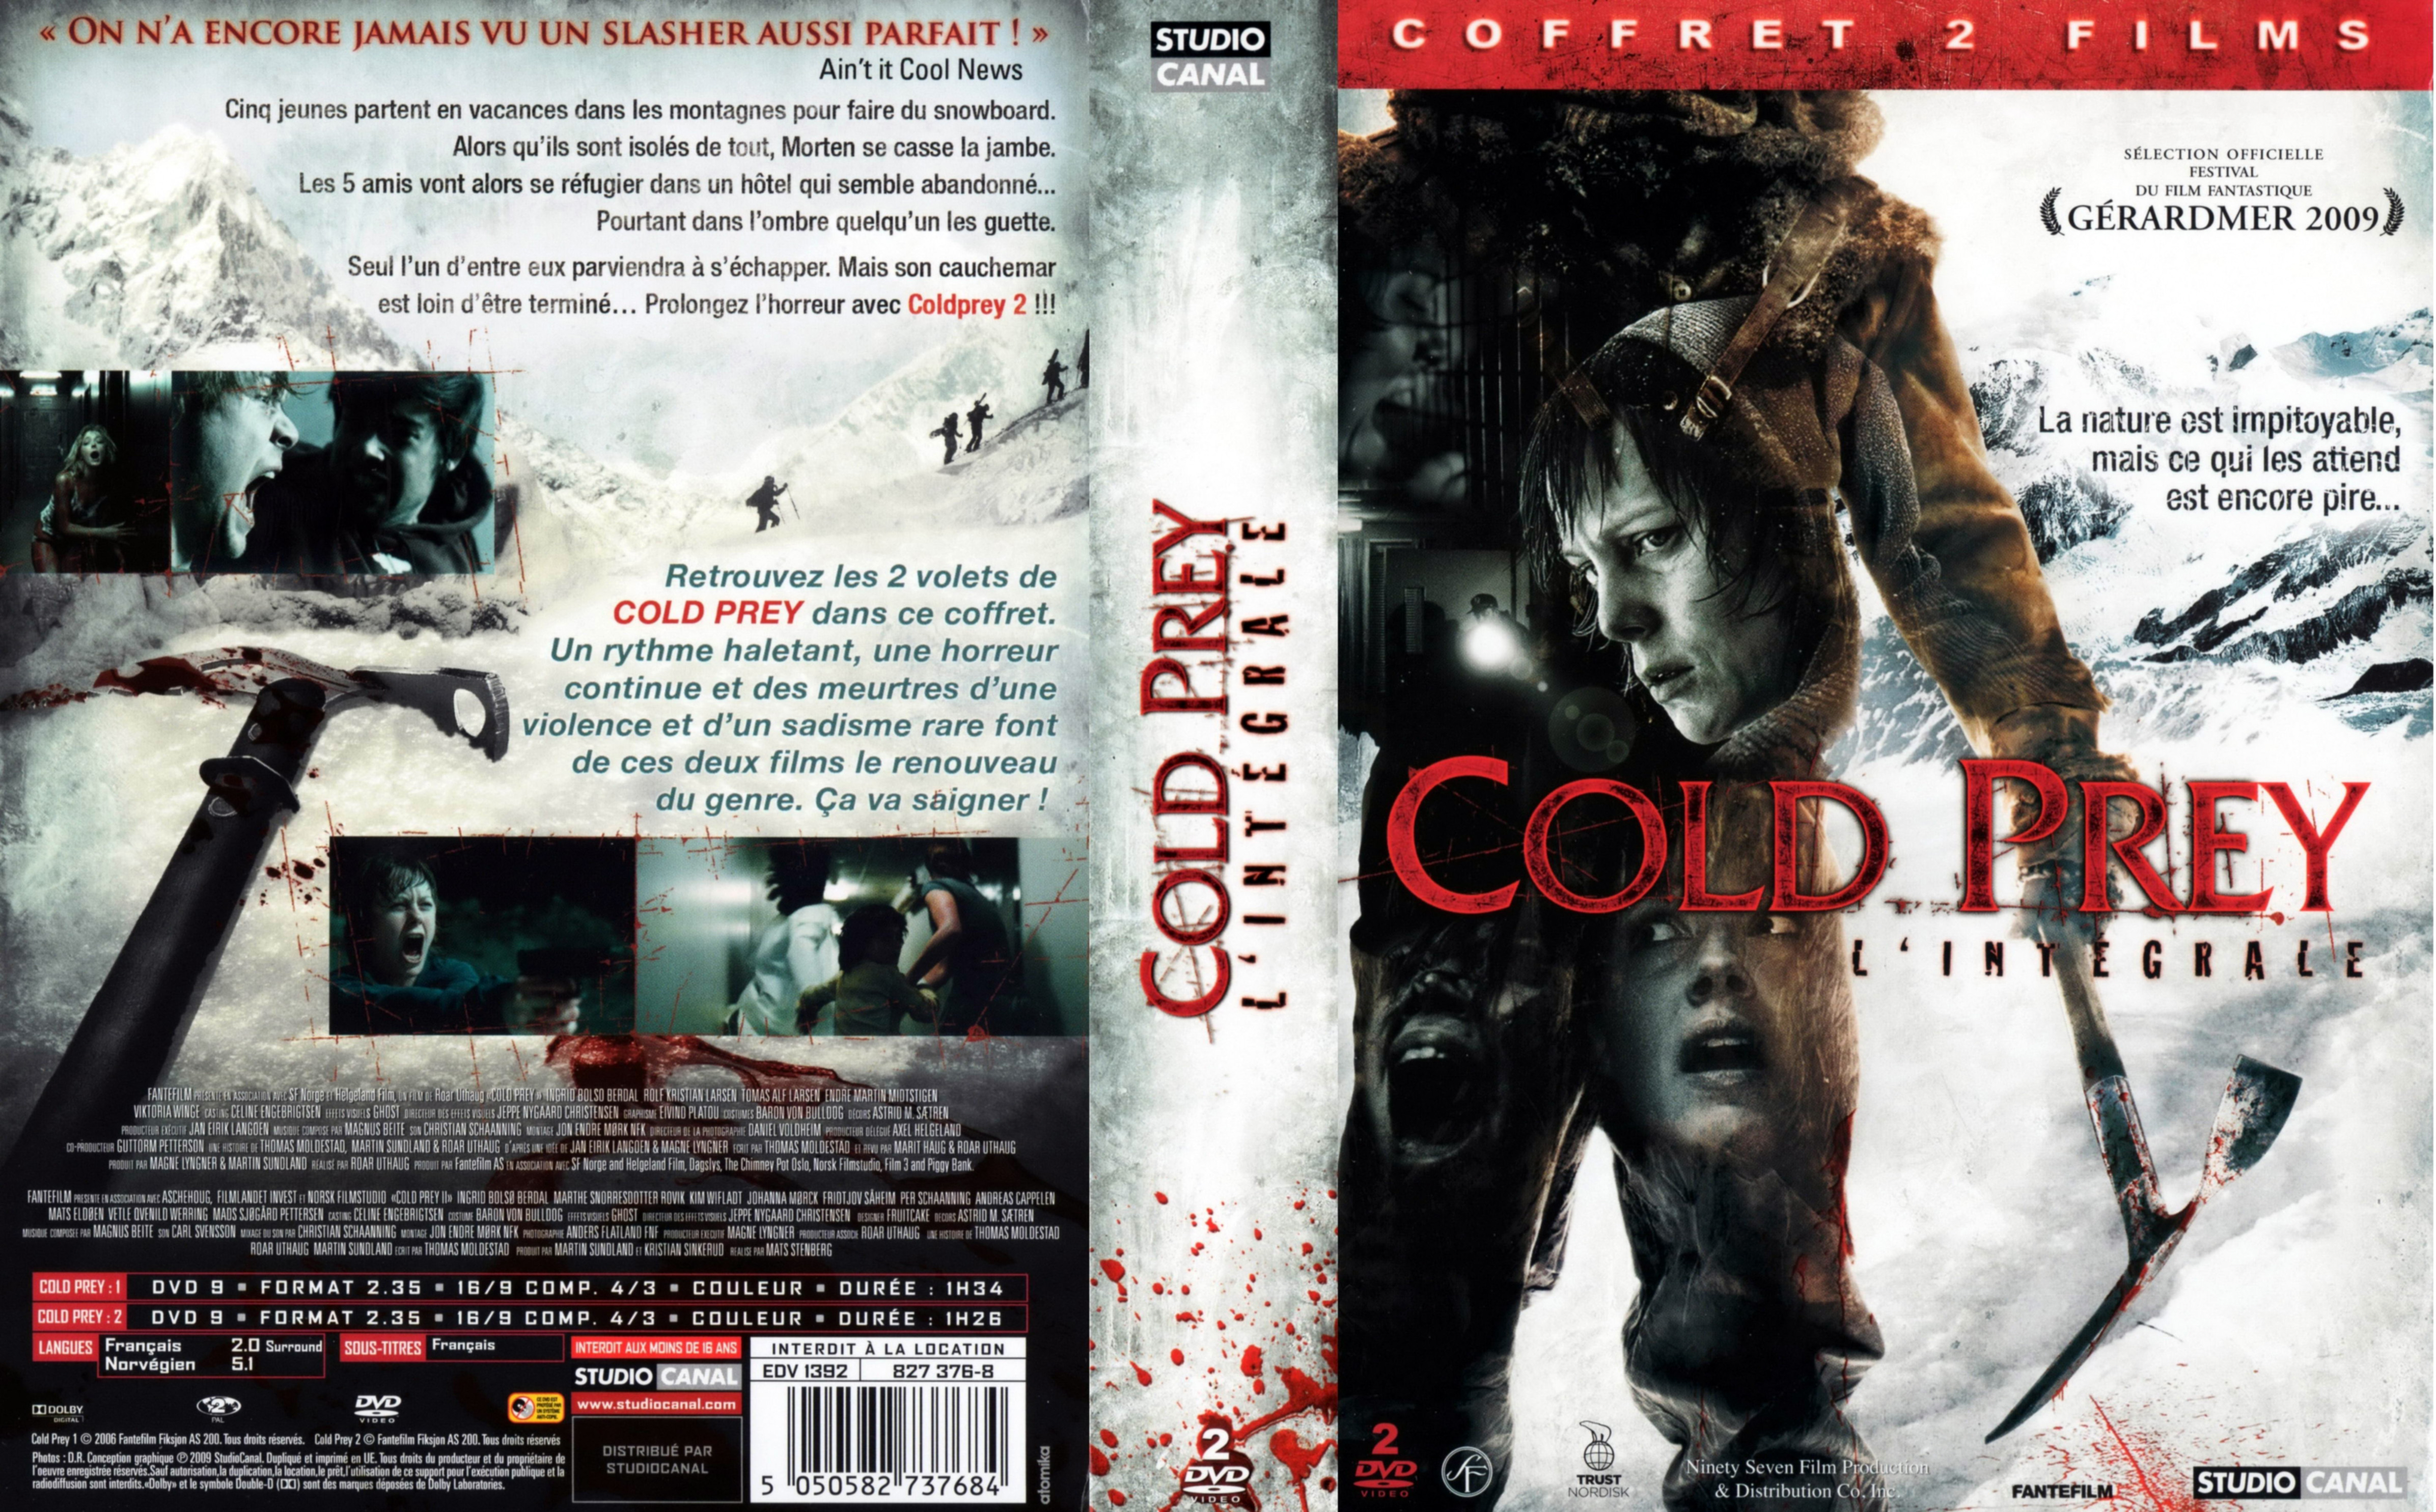 Jaquette DVD Cold prey 1 et 2